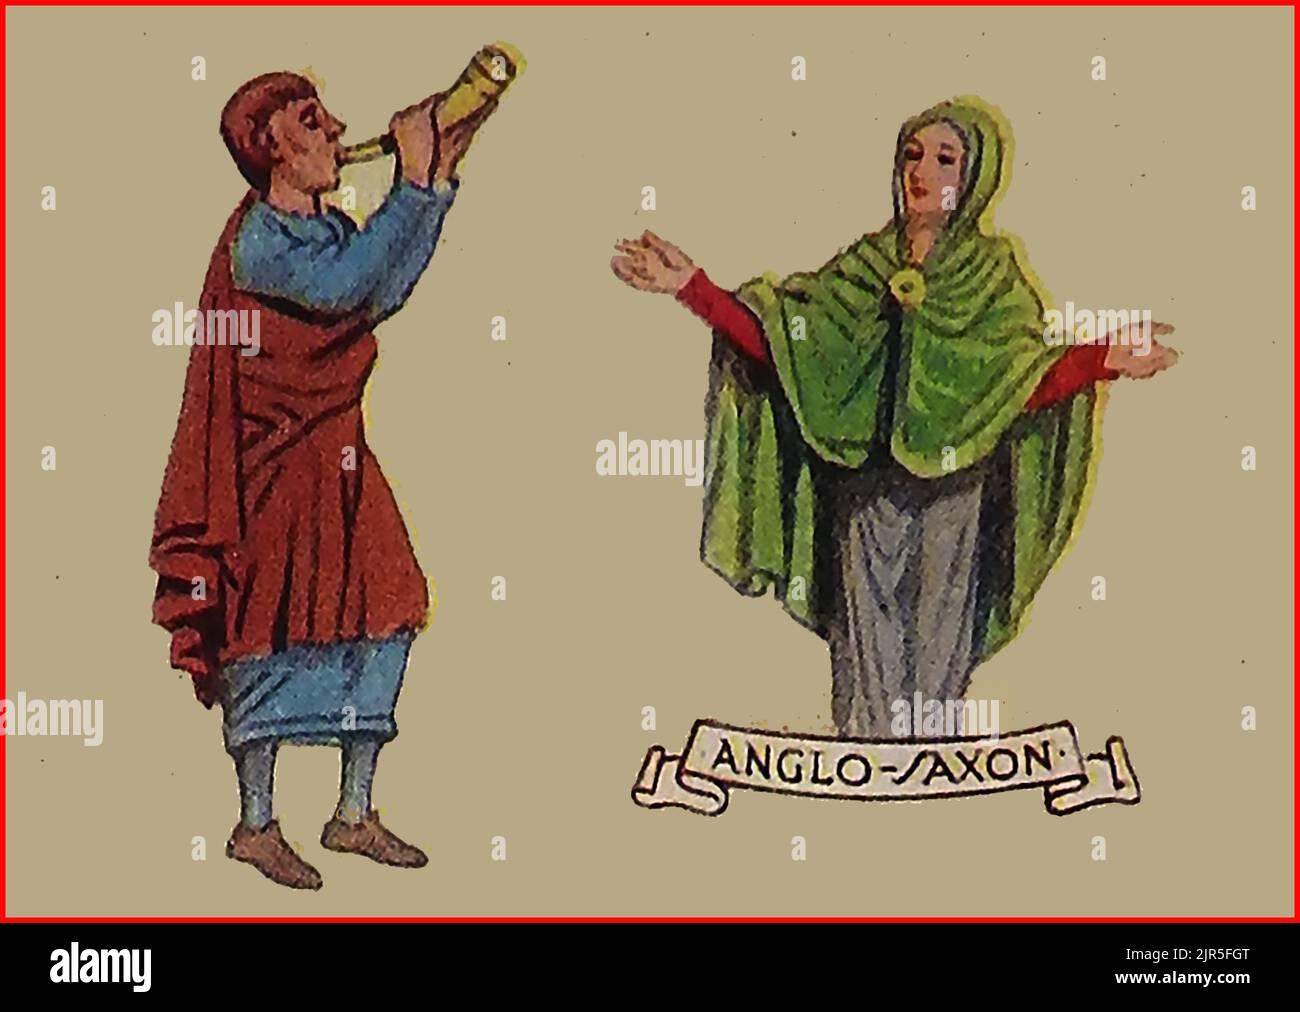 MODAS EN GRAN BRETAÑA - una vieja imagen coloreada que muestra la ropa típica en la época anglosajona. Foto de stock